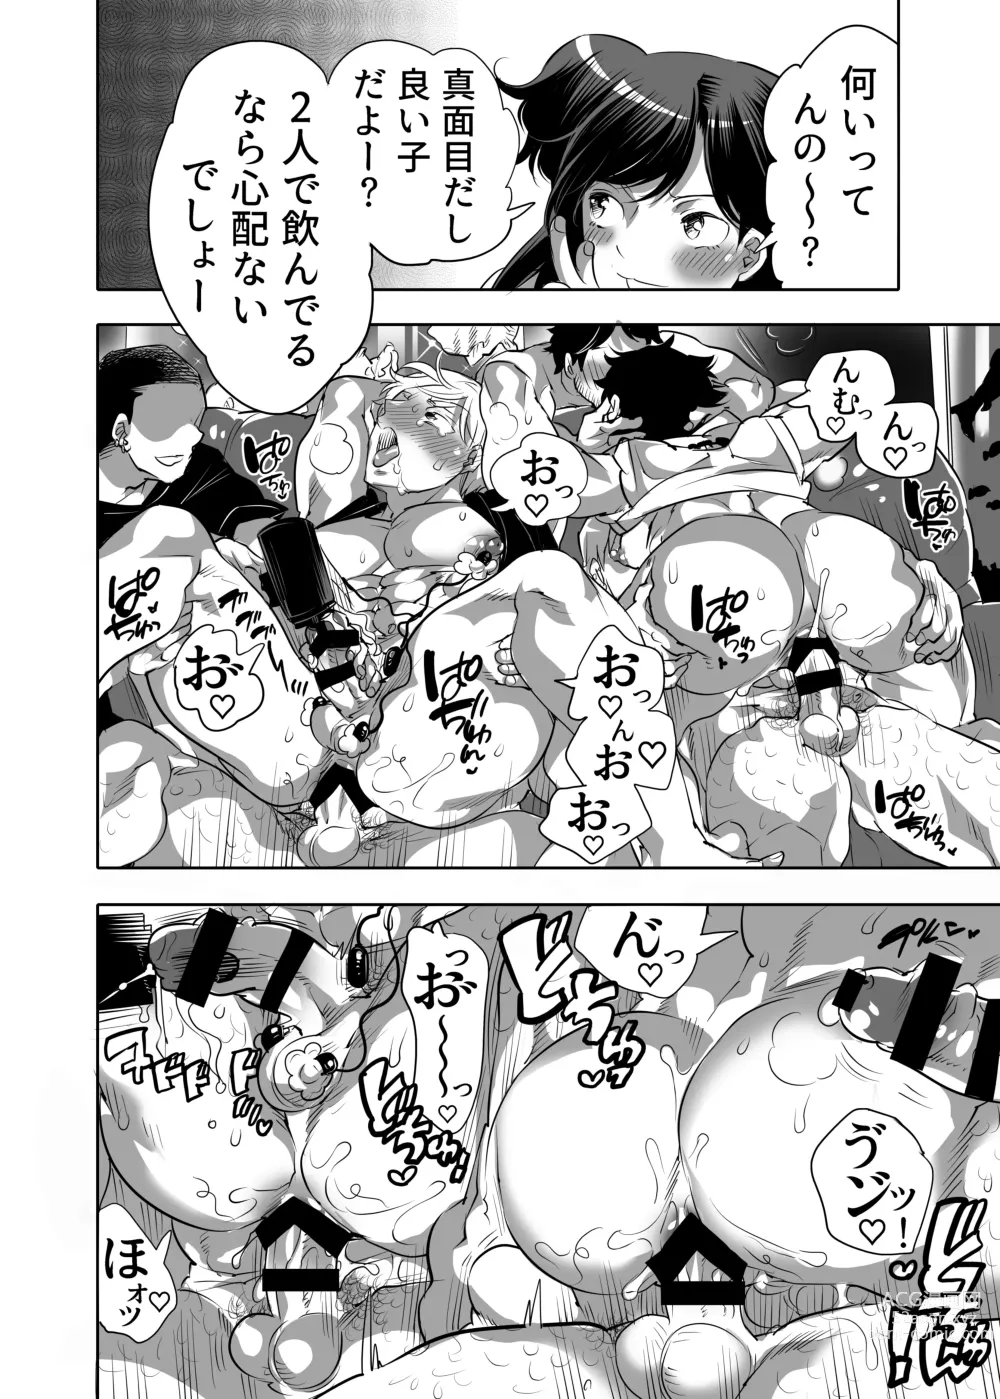 Page 54 of manga Abuso OK Prisionero Niño